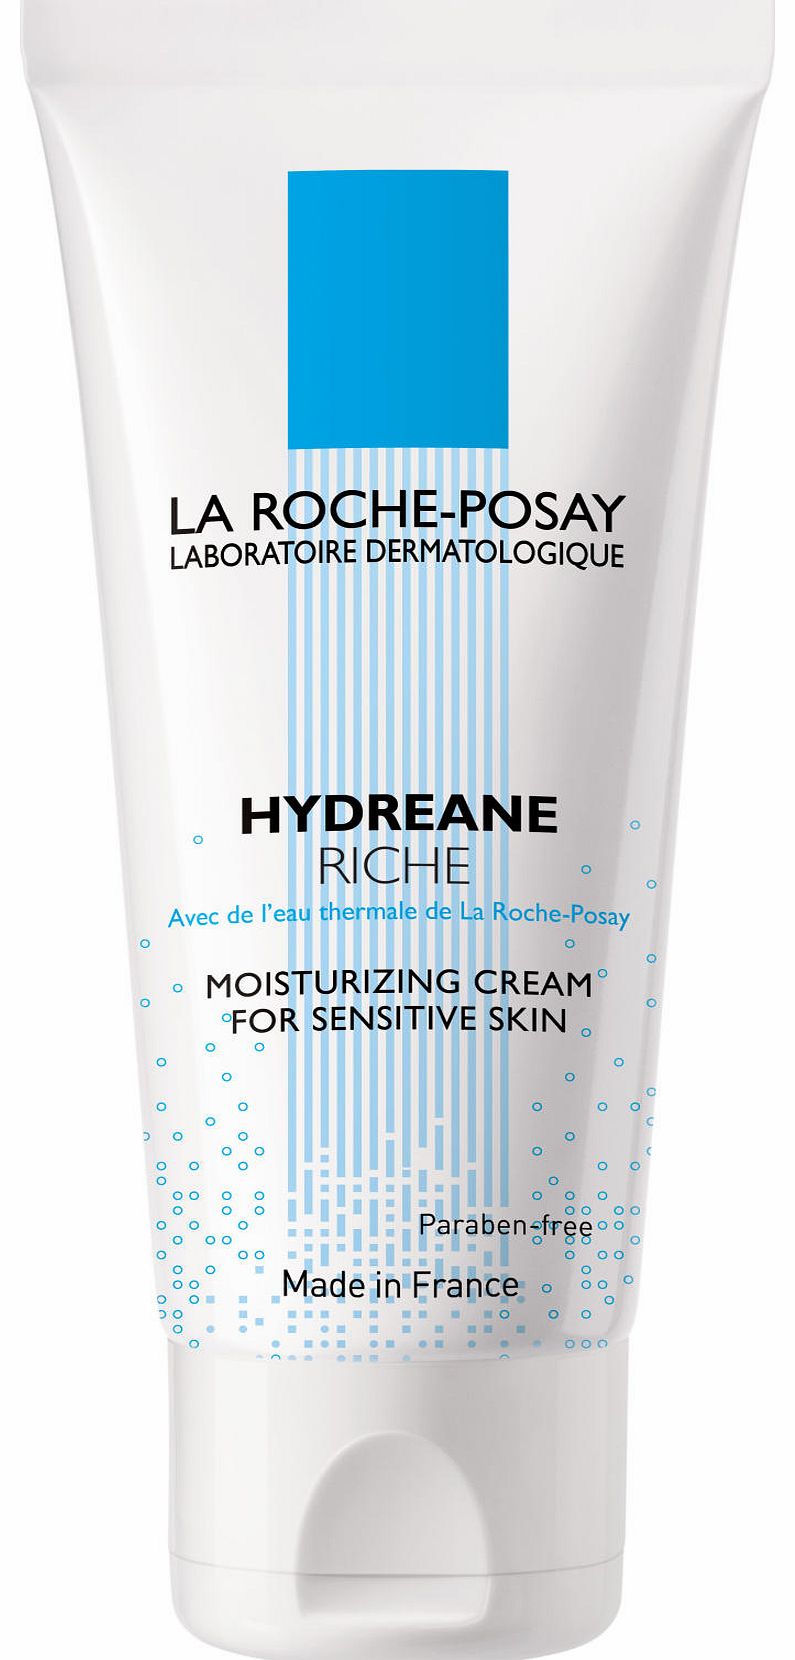 La Roche-Posay Hydreane Rich Moisturizing Cream